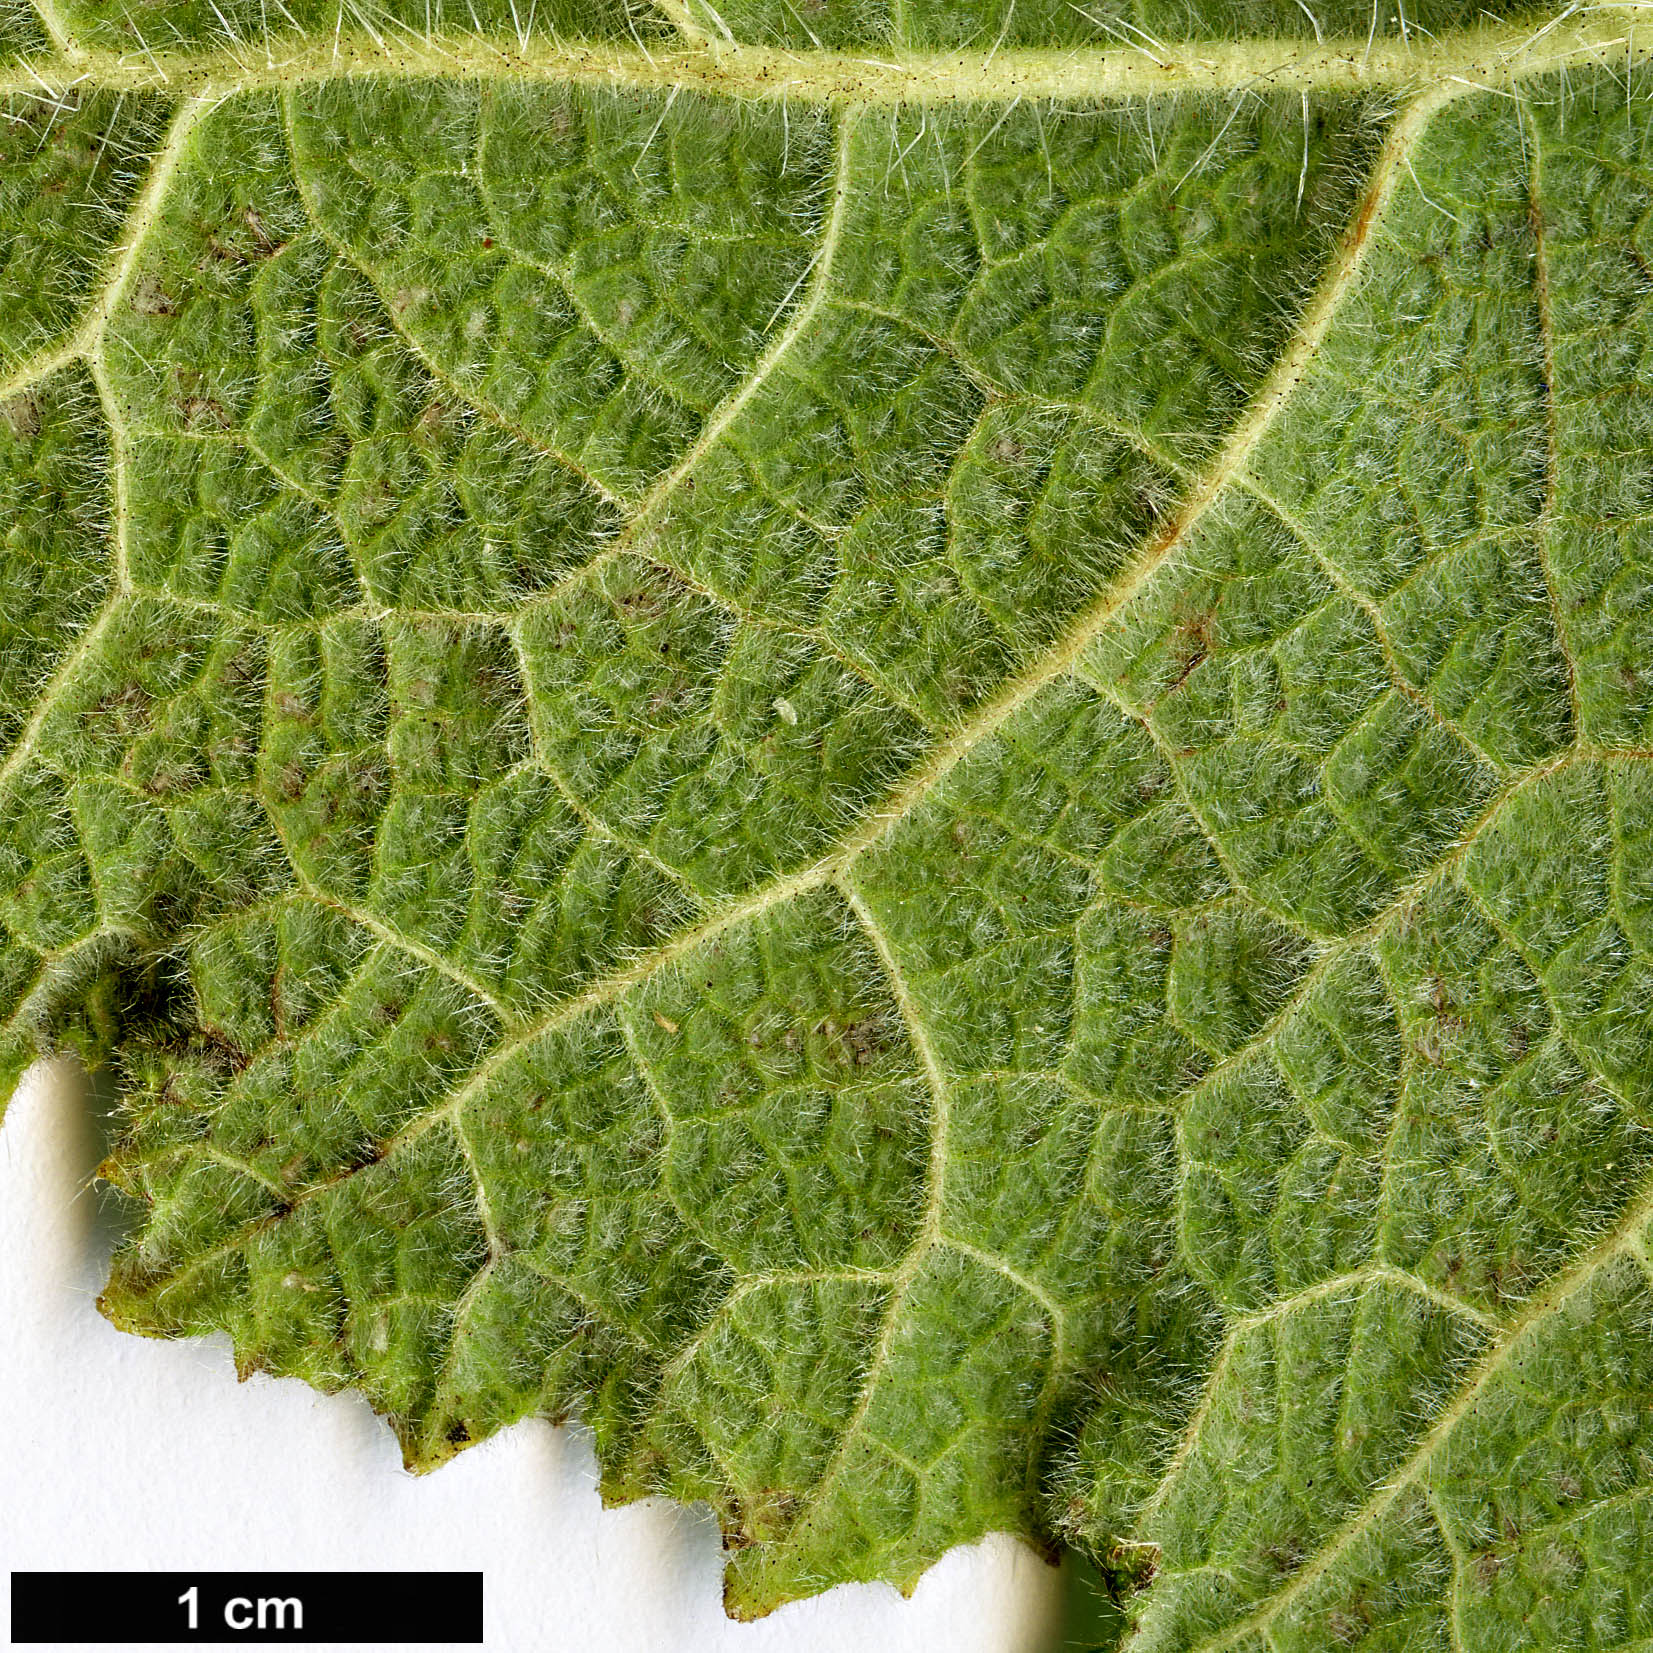 High resolution image: Family: Boraginaceae - Genus: Wigandia - Taxon: urens